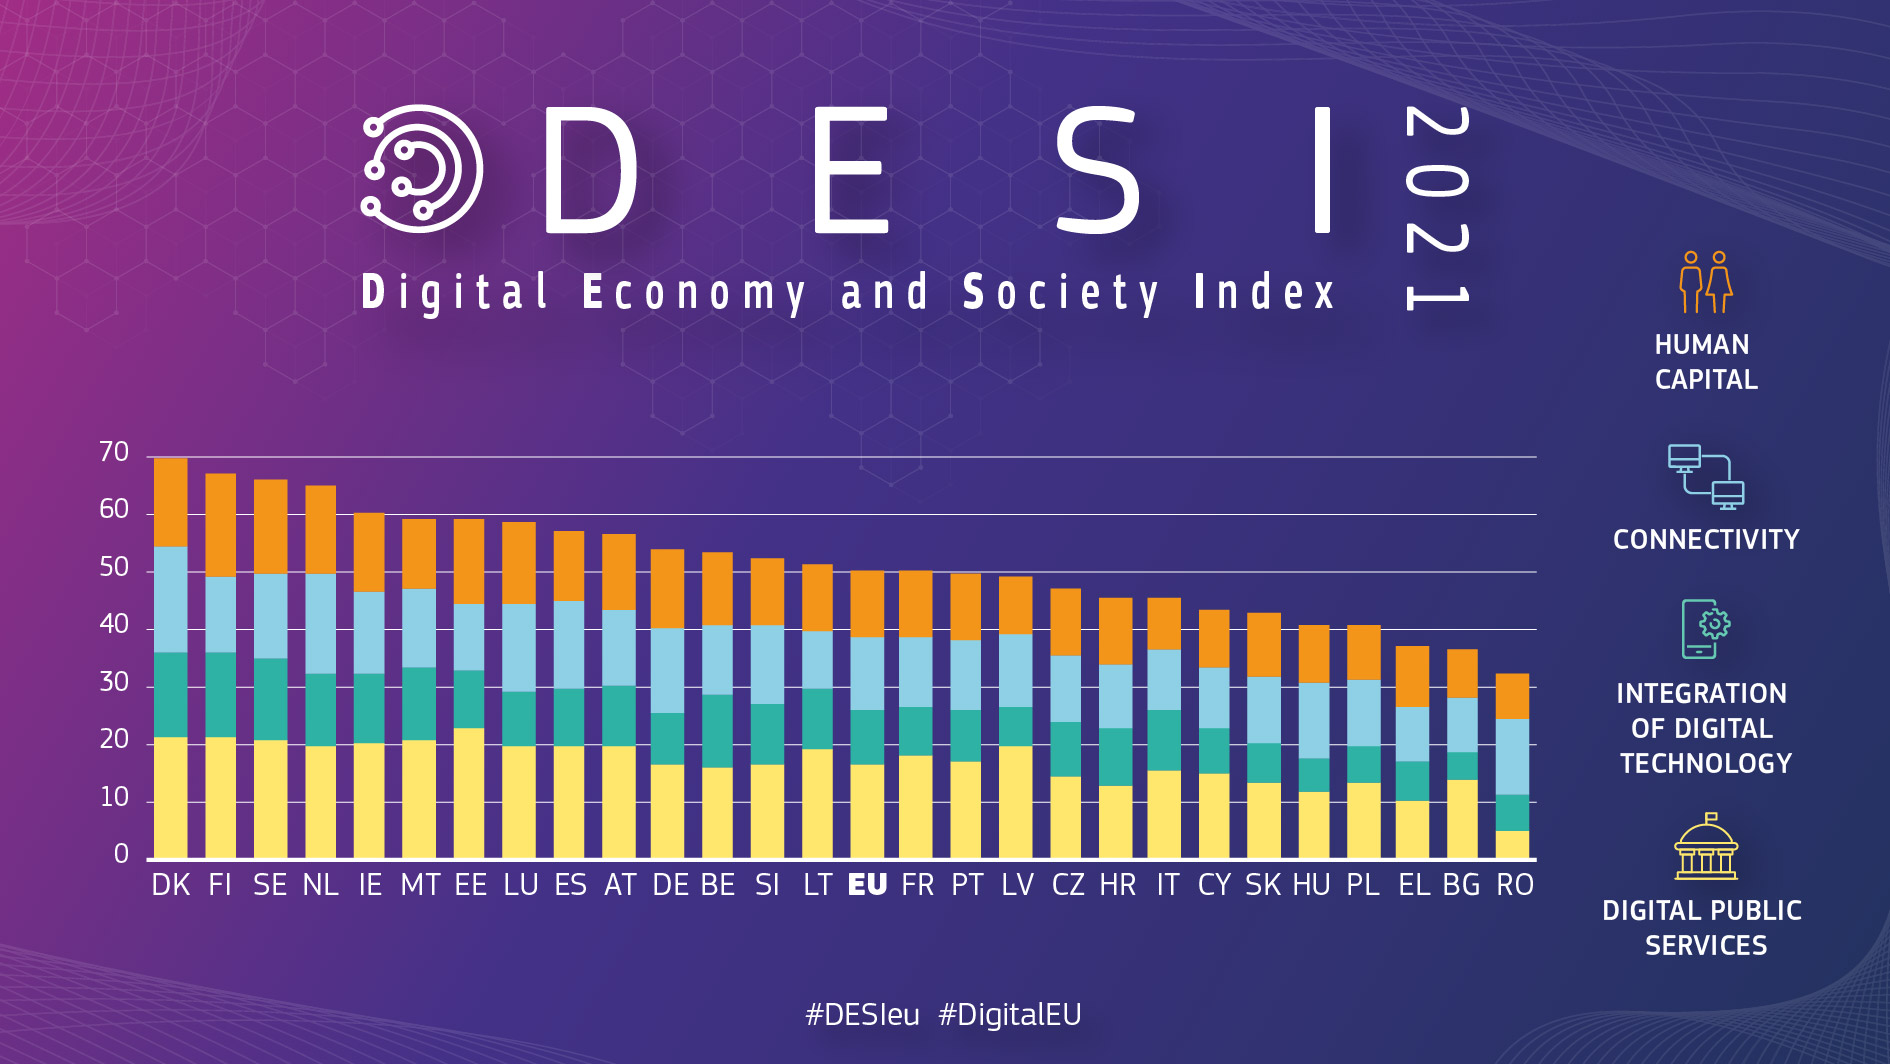 Άλμα τριών θέσεων για την Κύπρο στον Δείκτη Ψηφιακής Οικονομίας και Κοινωνίας DESI 2021